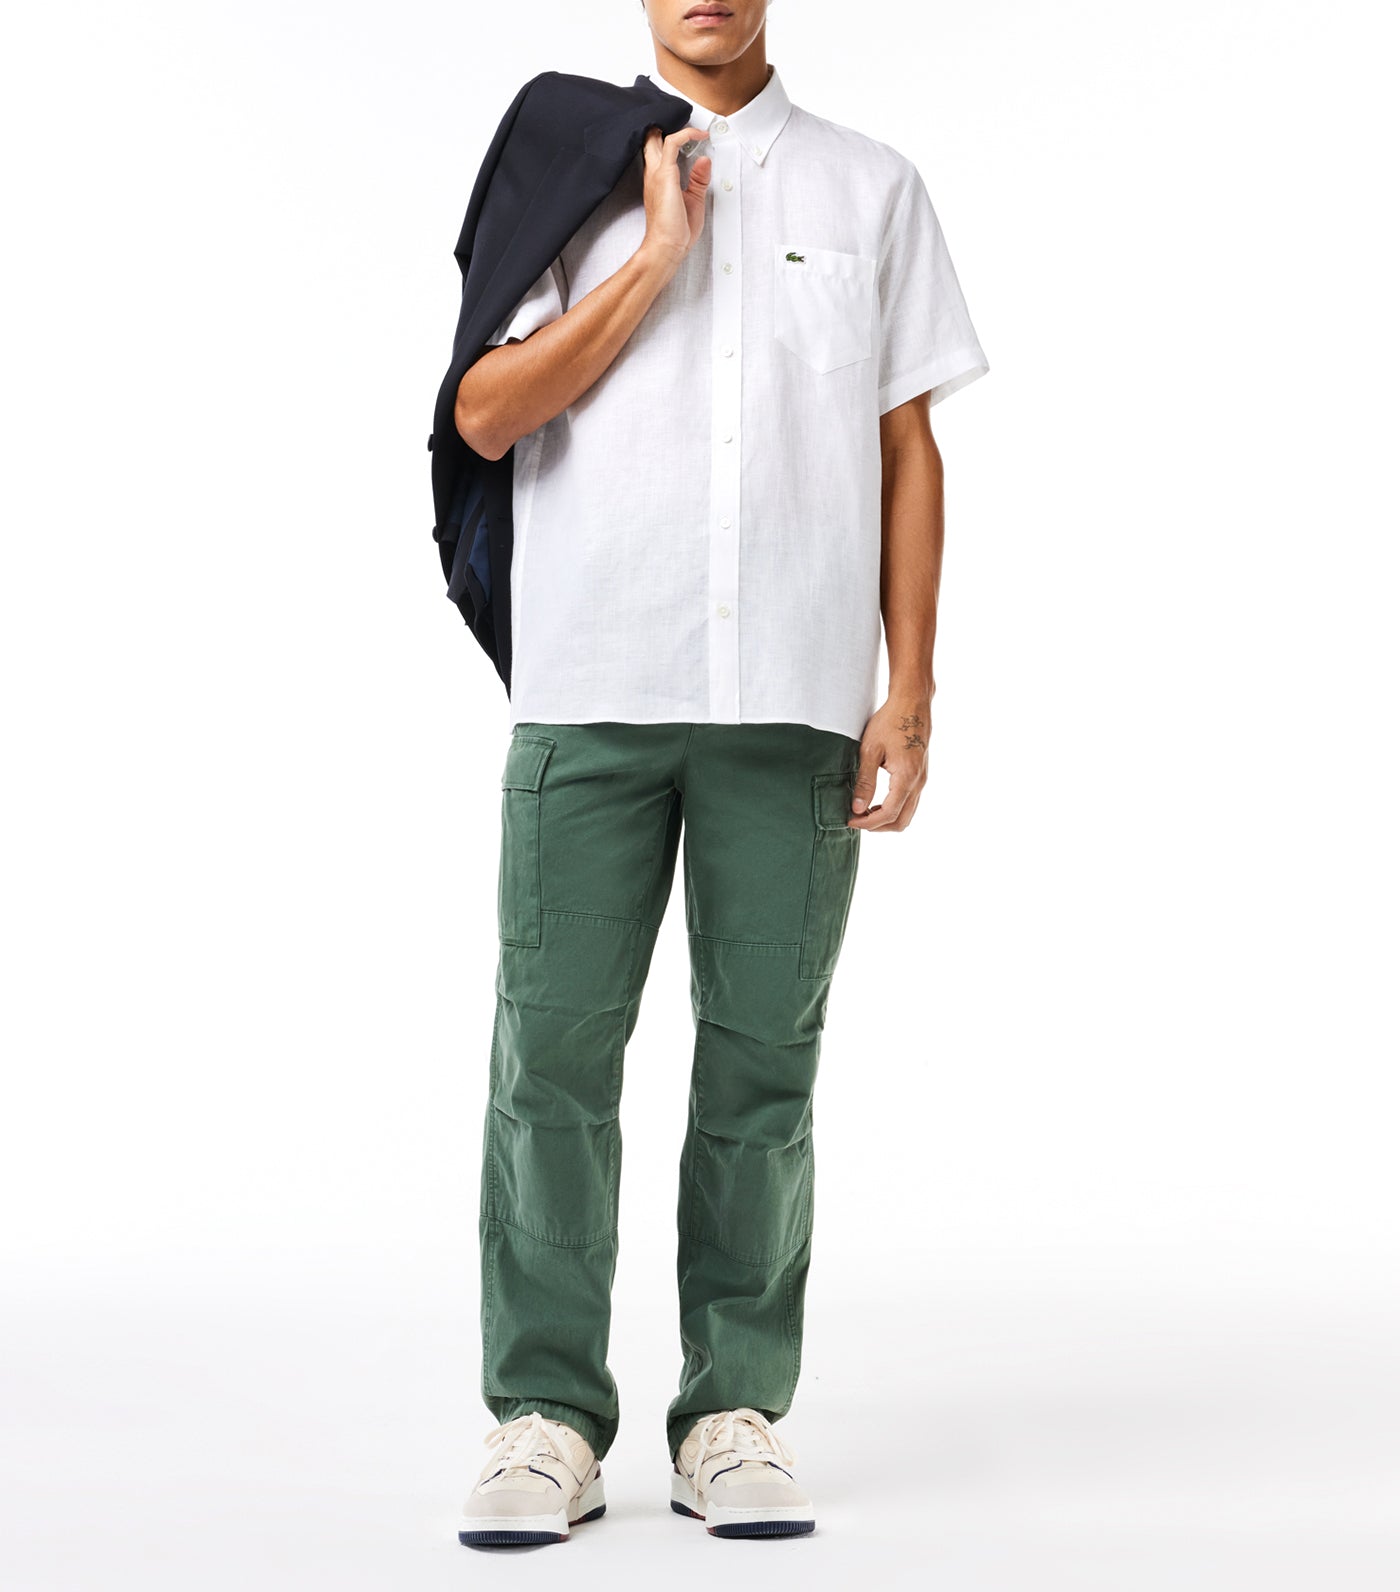 Men’s Lacoste Short Sleeve Linen Shirt White